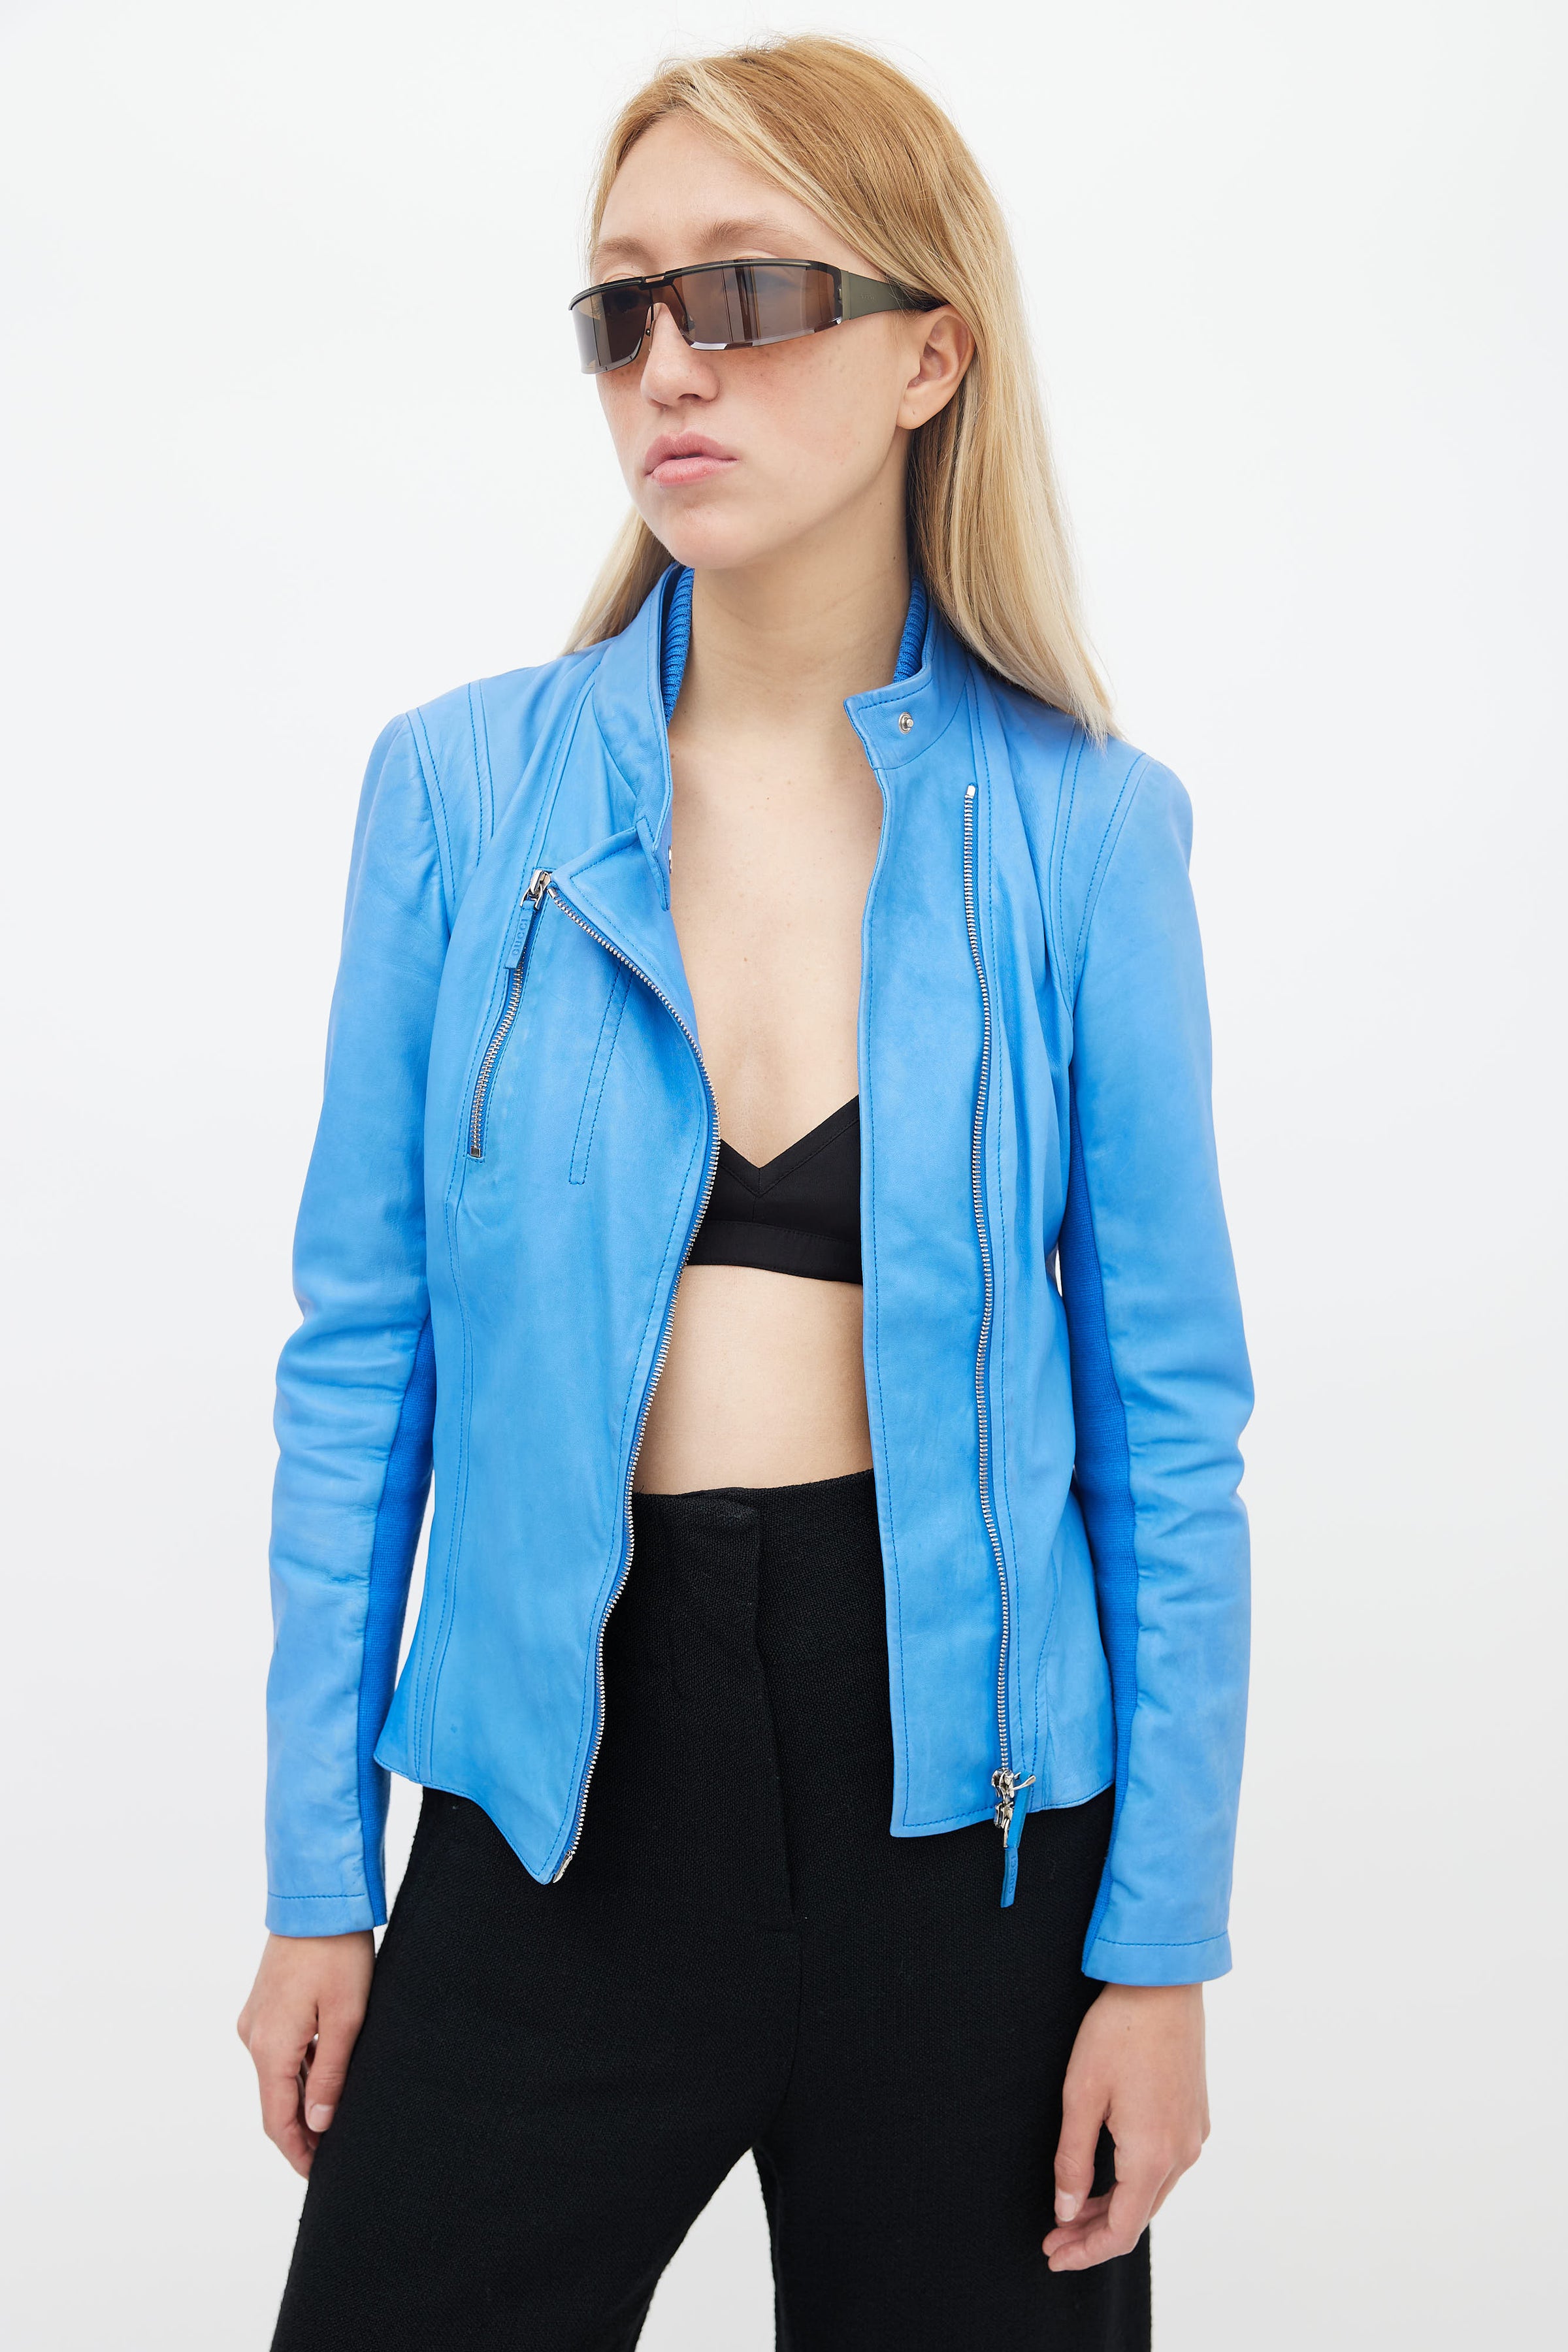 Fremragende Medarbejder Claire Gucci // Blue Leather Asymmetric Jacket – VSP Consignment